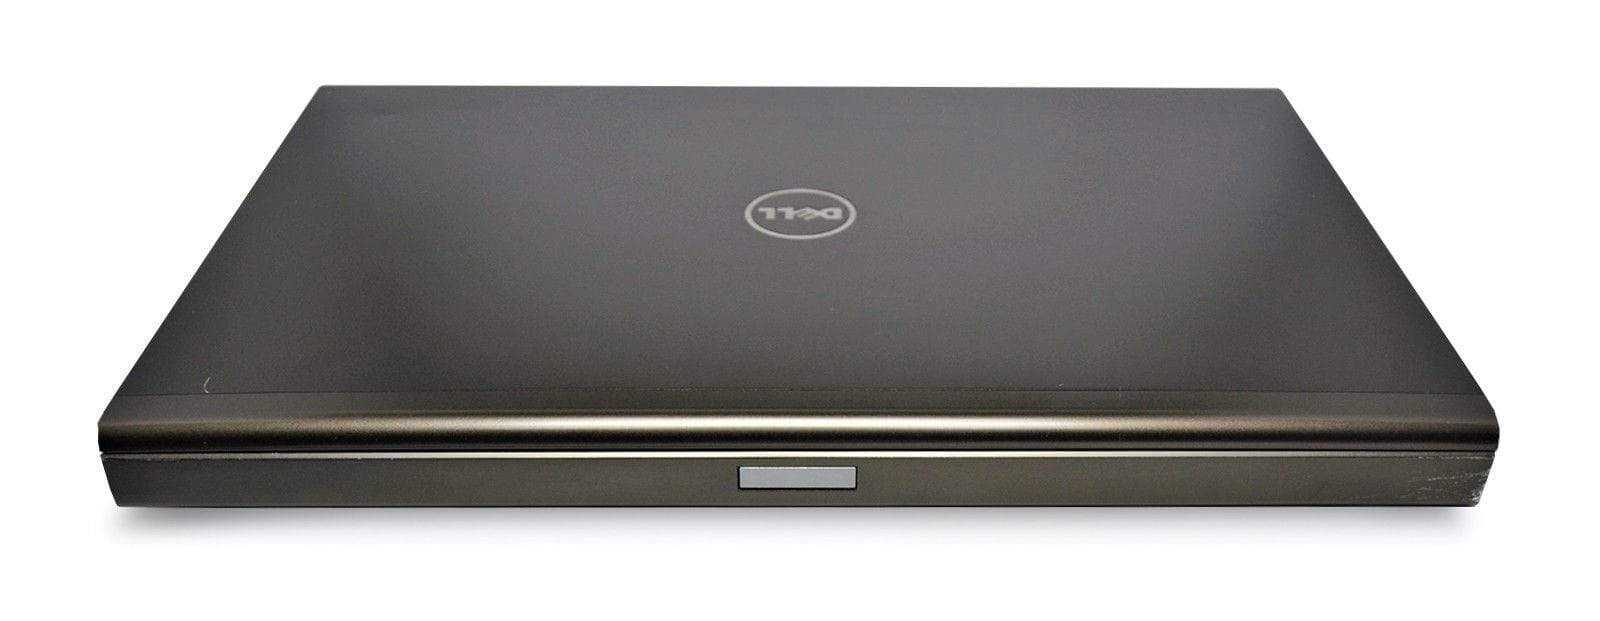 Dell Precision M6800 Laptop: Core i7, 32GB RAM, Quadro, 1TB SSD, VAT, Warranty - CruiseTech